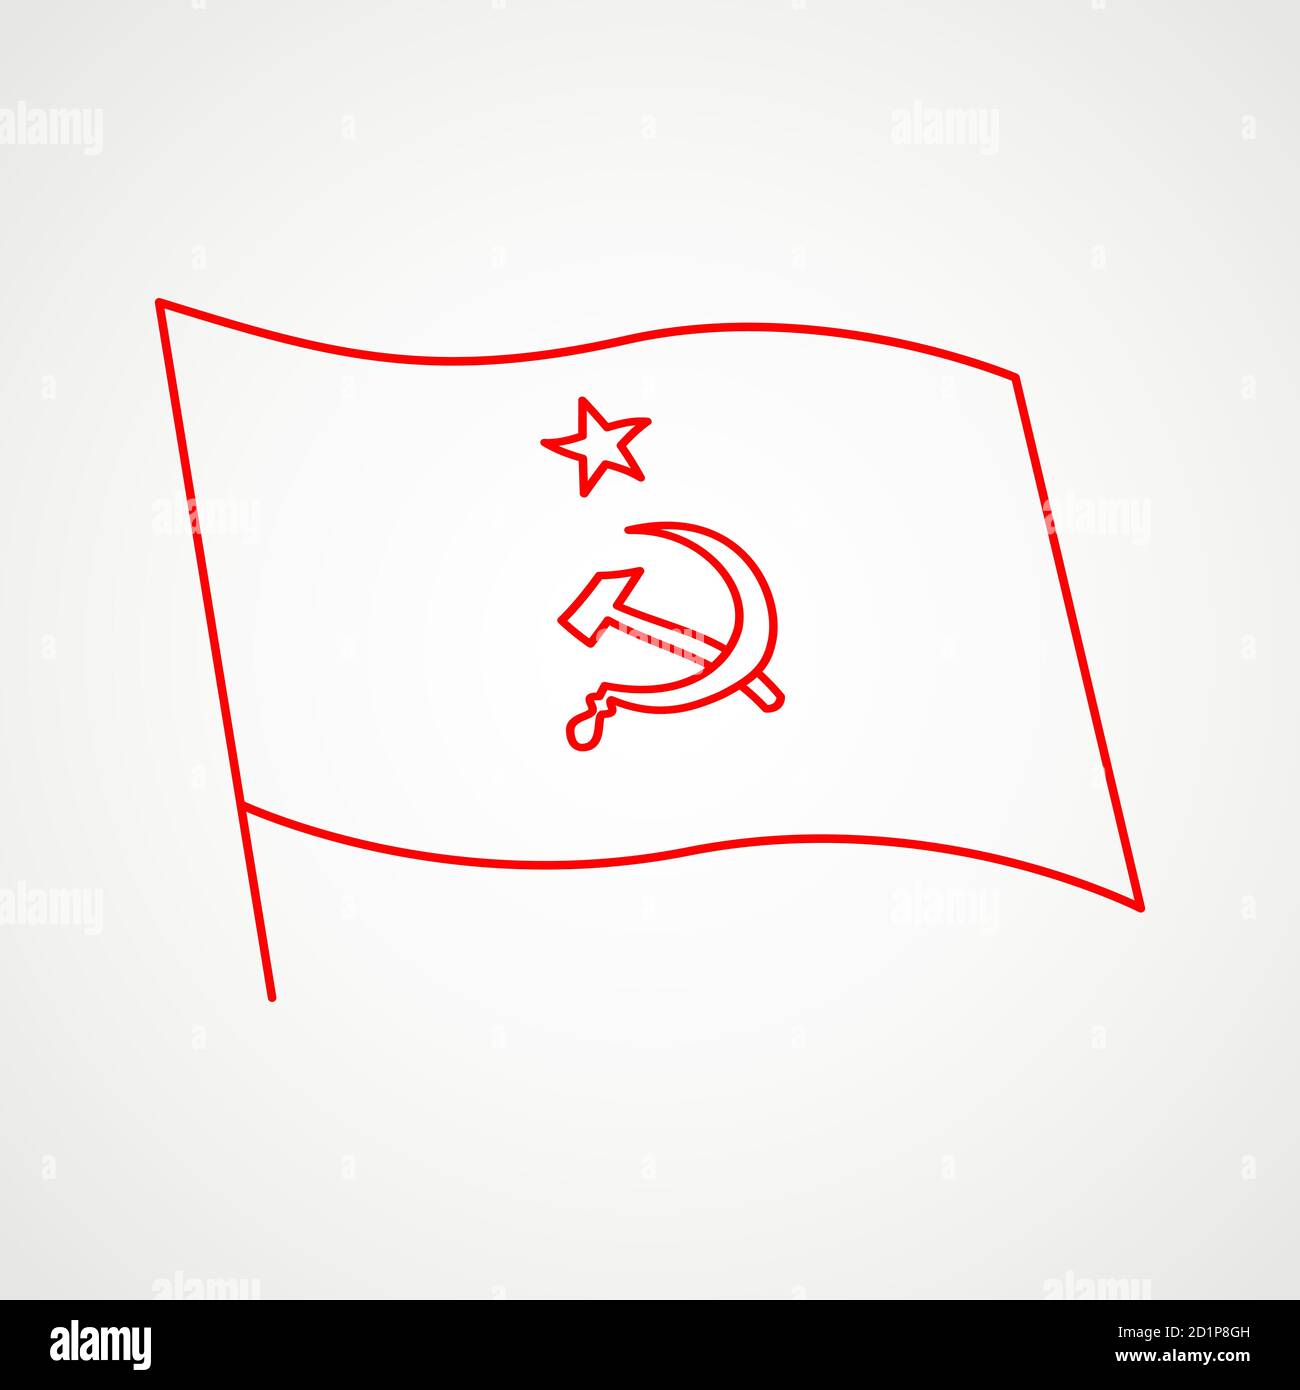 Lineare Ikone der kommunistischen Flagge mit sowjetischem Emblem. Hammer und Sichel mit einem Stern. Rotes sowjetisches Emblem. Minimalistisches Wappen der UdSSR. Vektor Stock Vektor